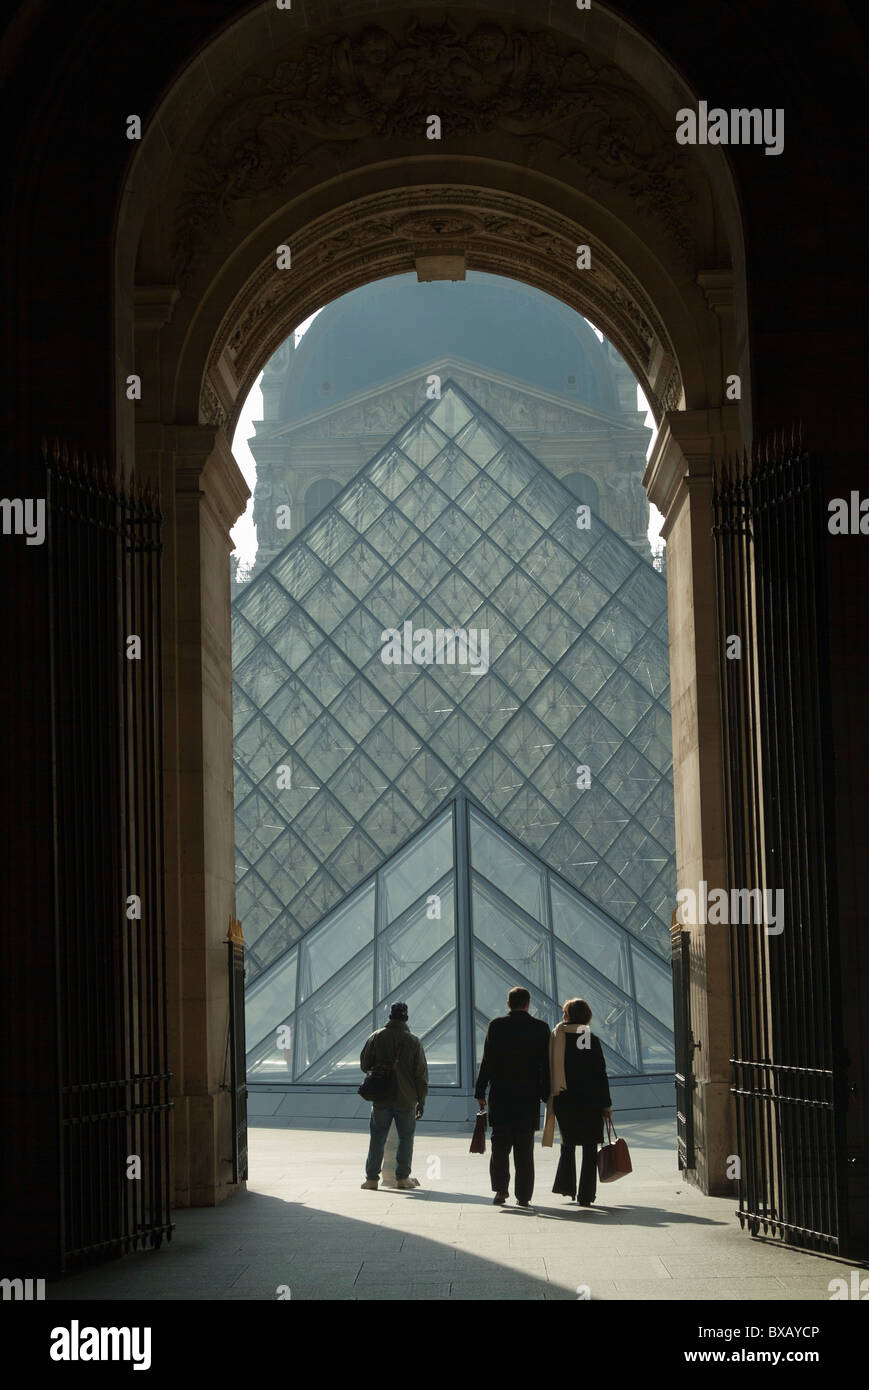 La pyramide du Louvre, vu d'un grand porche, Paris, France. Banque D'Images